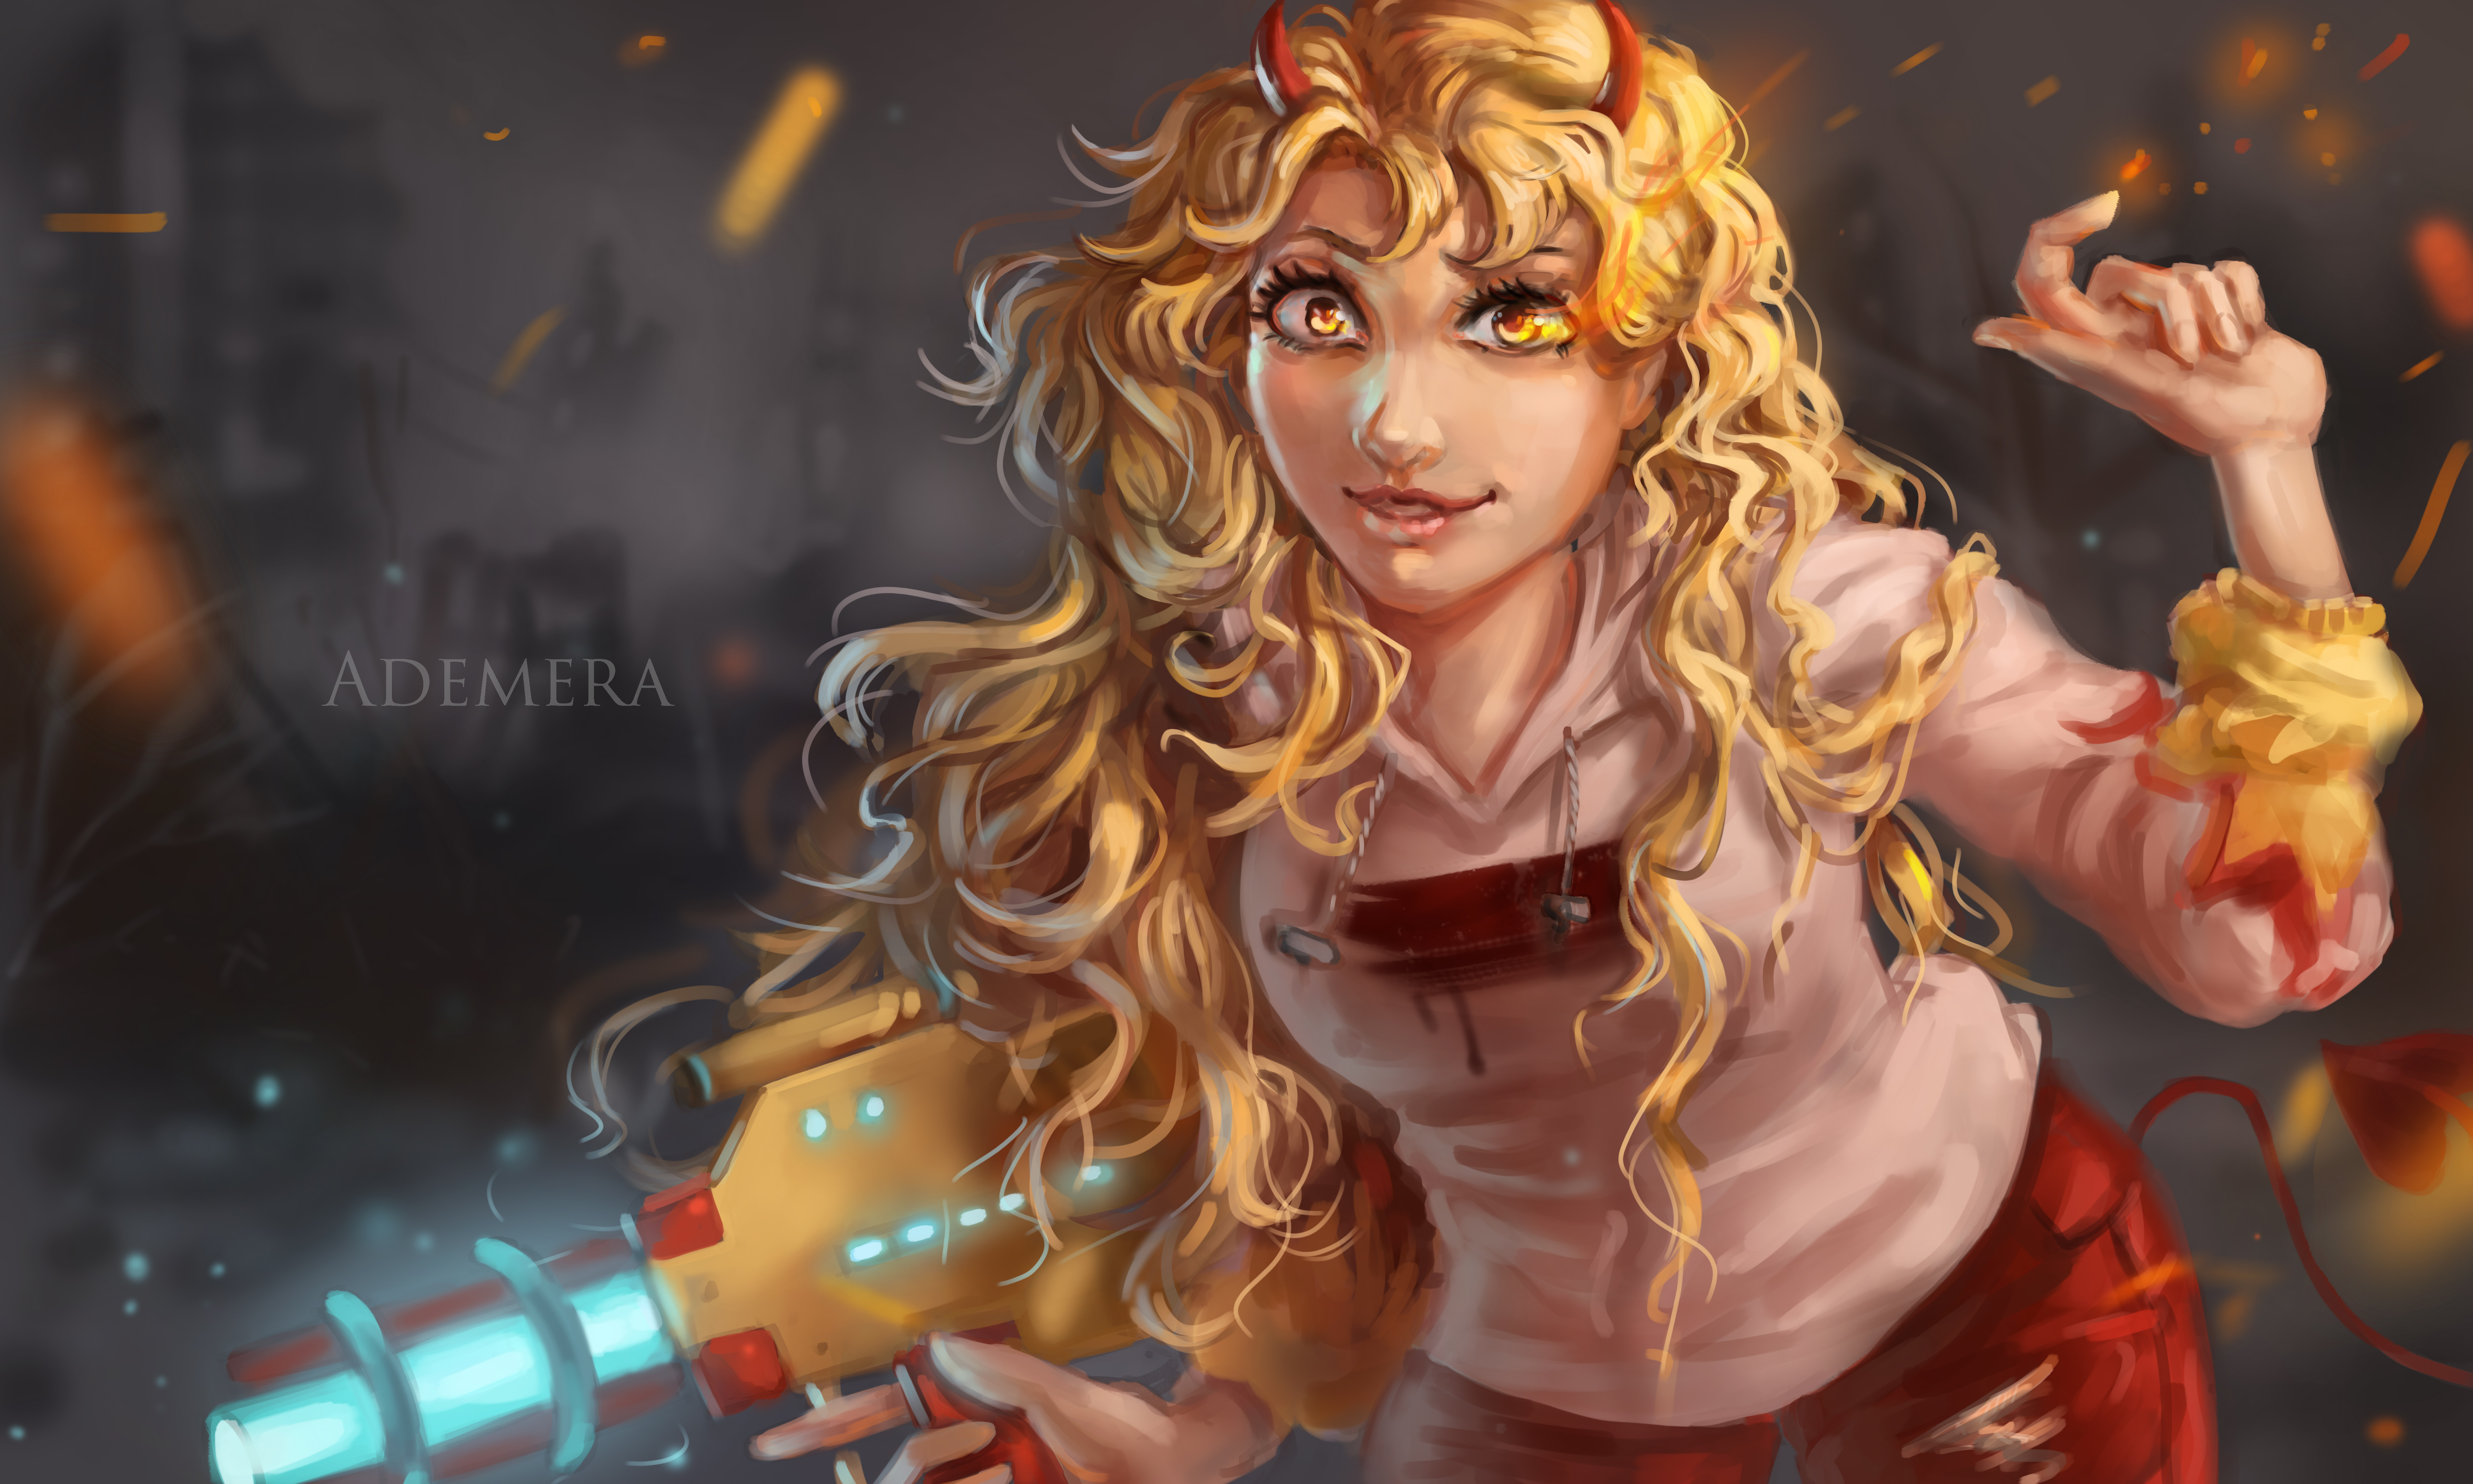 Fantasy anime fire girl | Poster